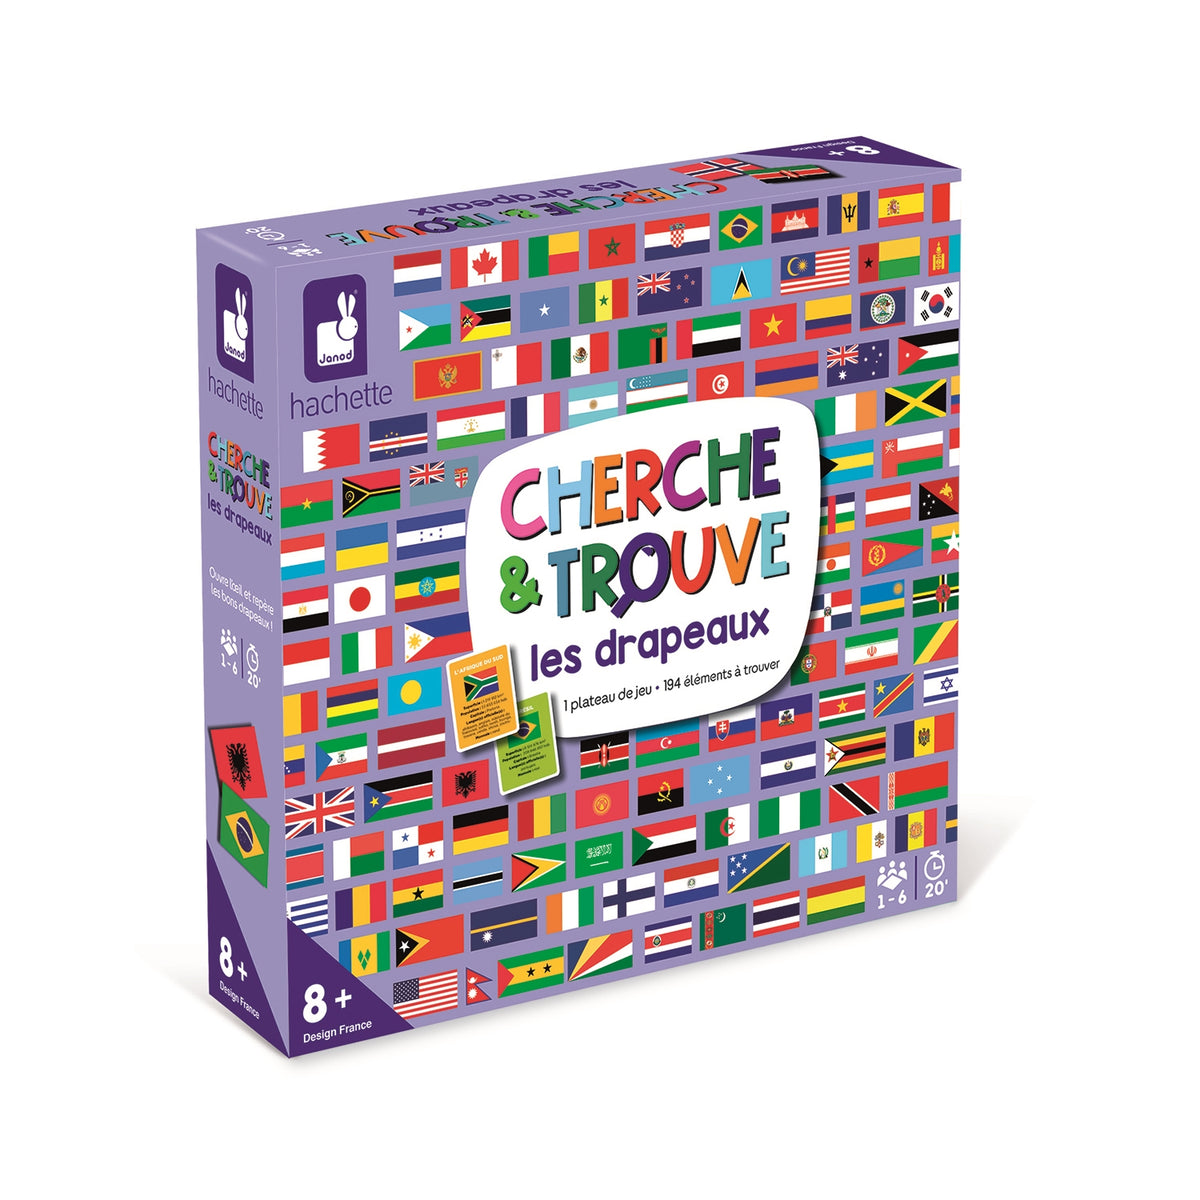 Cherche Et Trouve Drapeaux Game by Janod